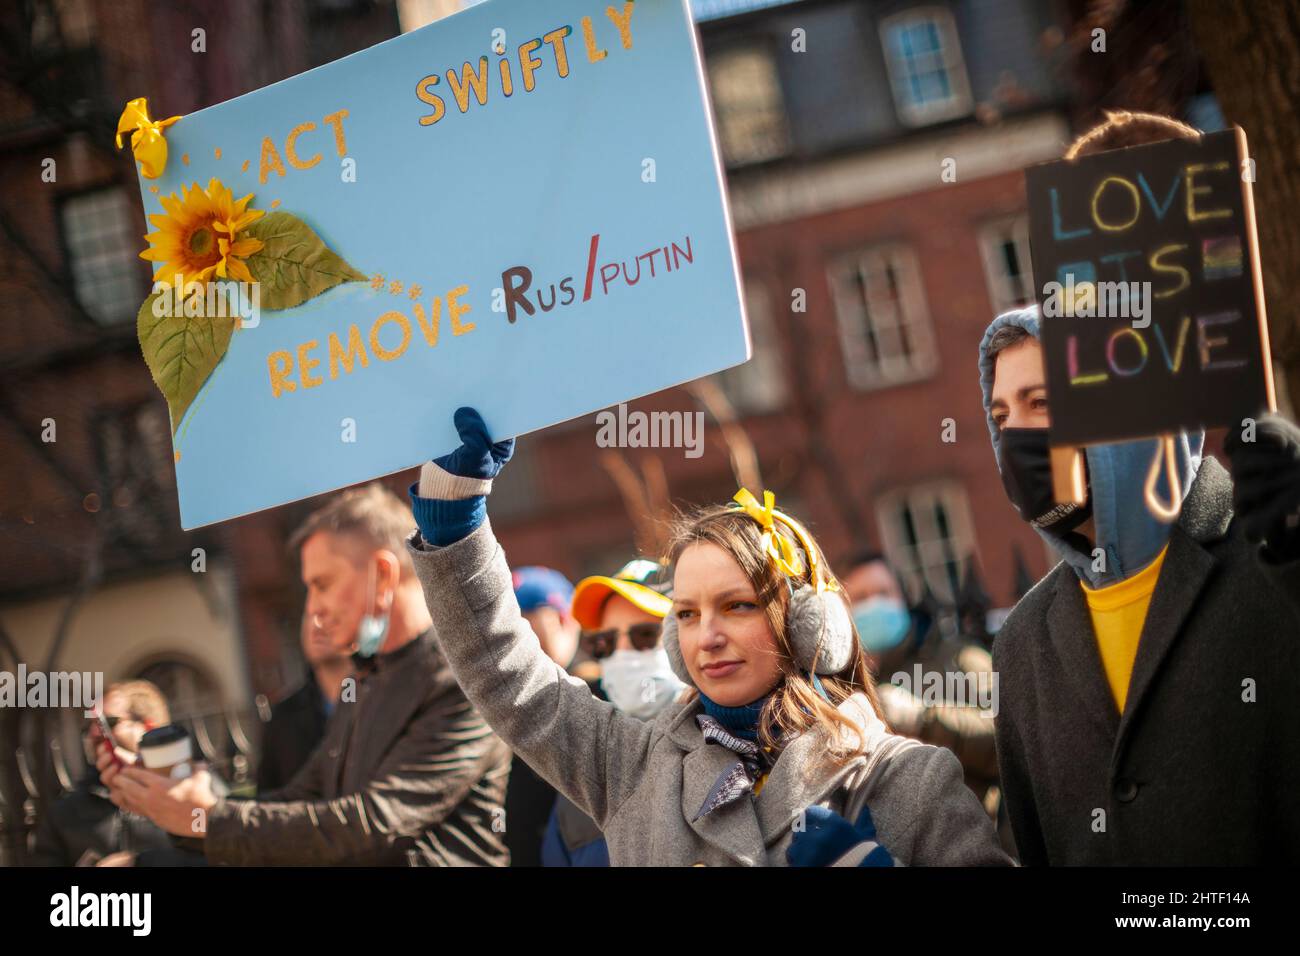 Mitglieder der LGBTQ+-Gemeinschaft, ihre Unterstützer und Ukrainisch-Amerikaner protestieren gegen die russische Invasion und zeigen am Samstag, 26. Februar 2022, Unterstützung für die Bürger der Ukraine vor dem Stonewall Inn in Greenwich Village in New York. (© Richard B. Levine) Stockfoto